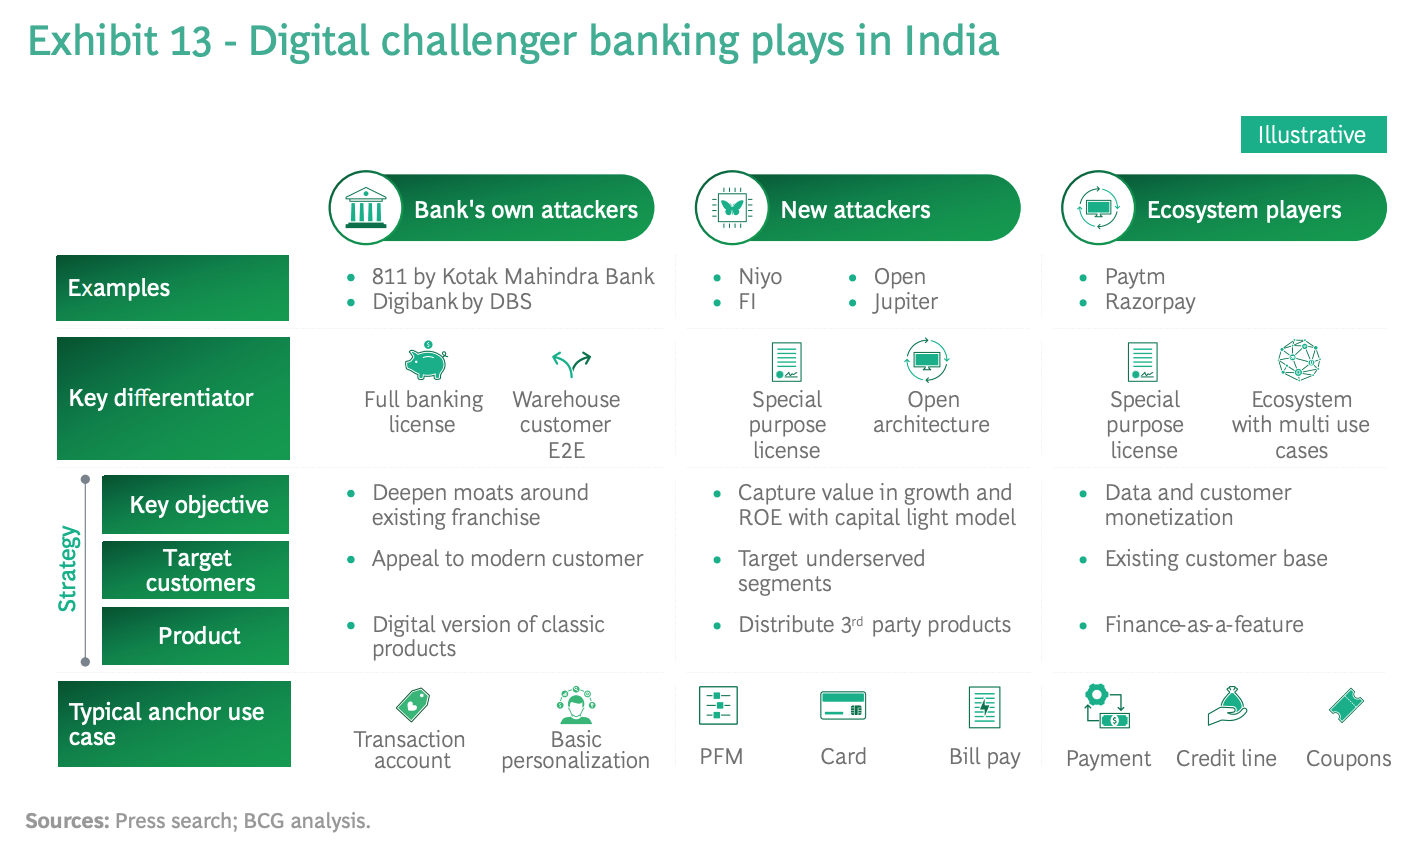 La banca digital desafiante juega en India, Fuente: Boston Consulting Group, junio de 2021